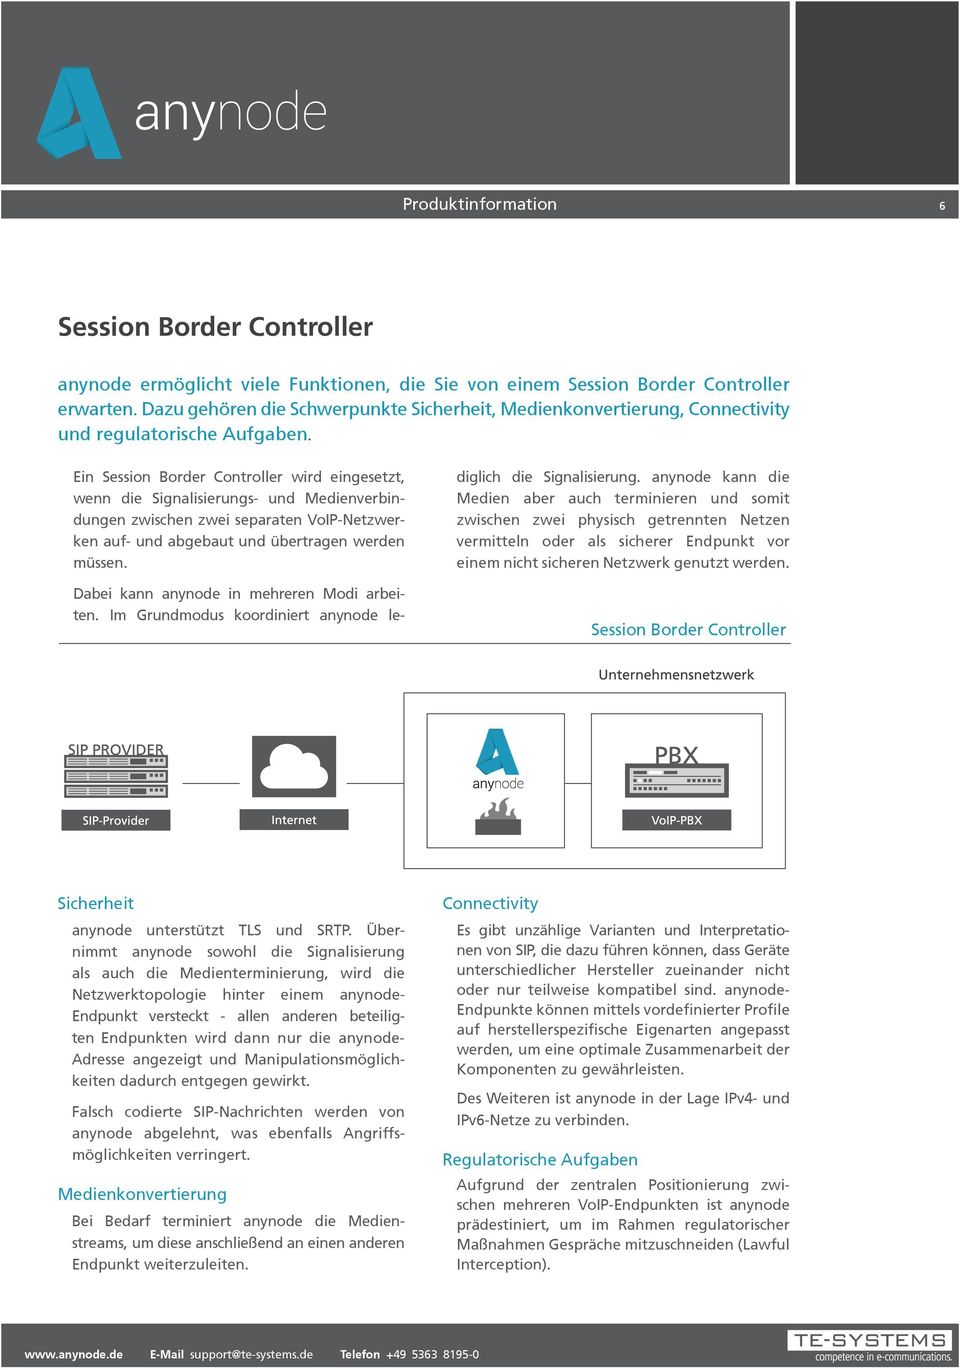 Ein Session Border Controller wird eingesetzt, wenn die Signalisierungs- und Medienverbindungen zwischen zwei separaten VoIP-Netzwerken auf- und abgebaut und übertragen werden müssen.